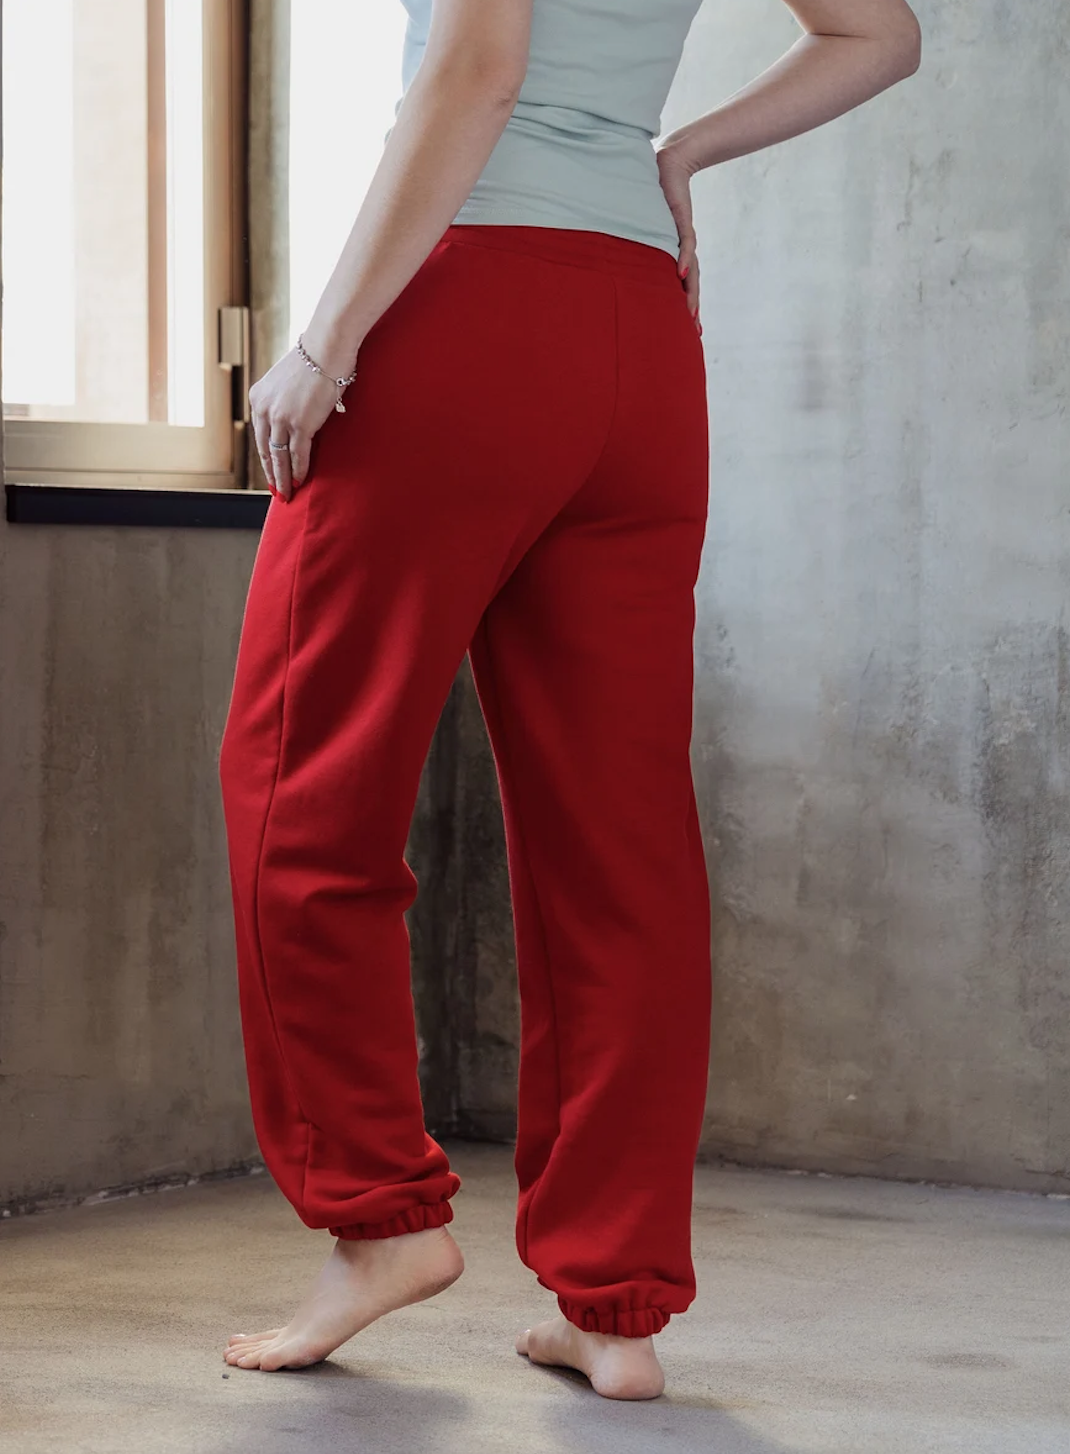 Women Pants PDF sewing pattern Size XXS- XL- A4/A0